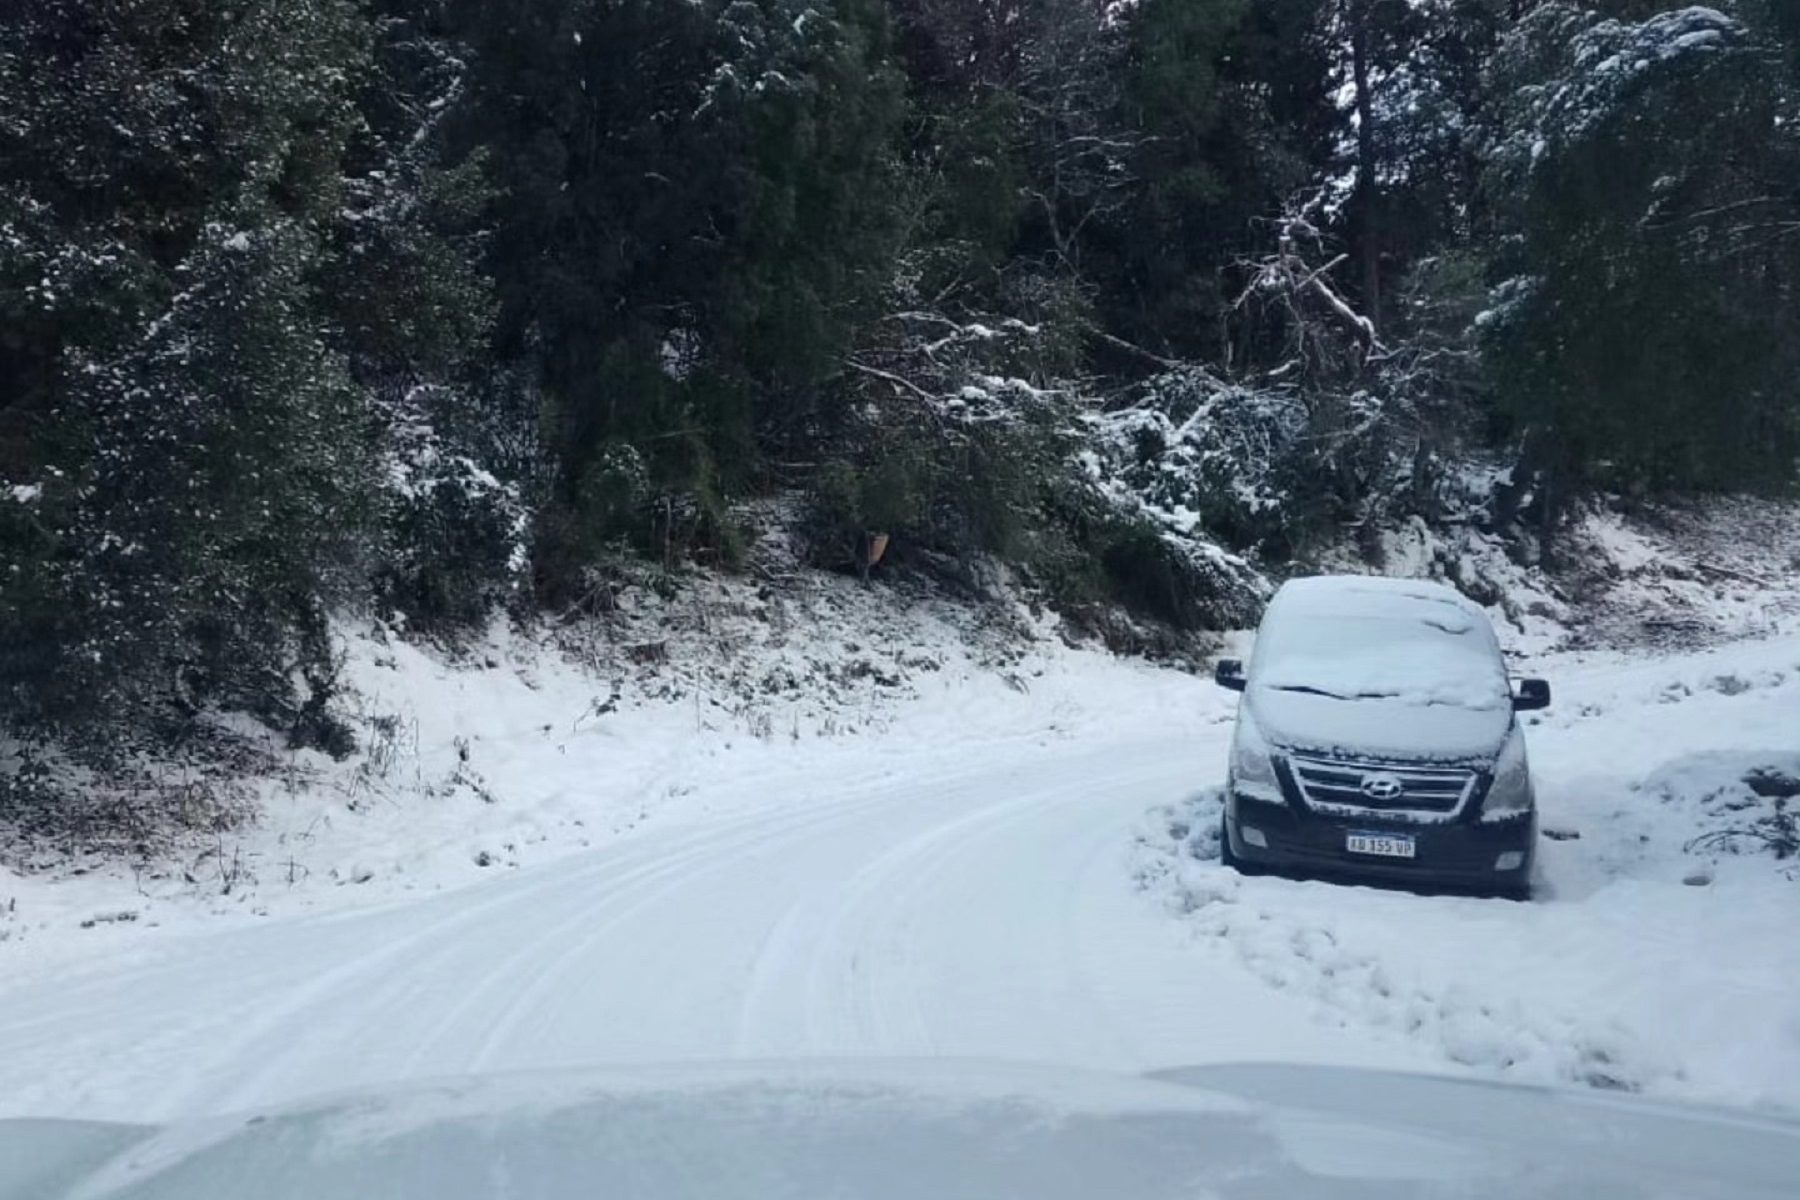 Los efectos del temporal de nieve en el parque Nahuel Huapi. Crédito parque Nahuel Huapi.